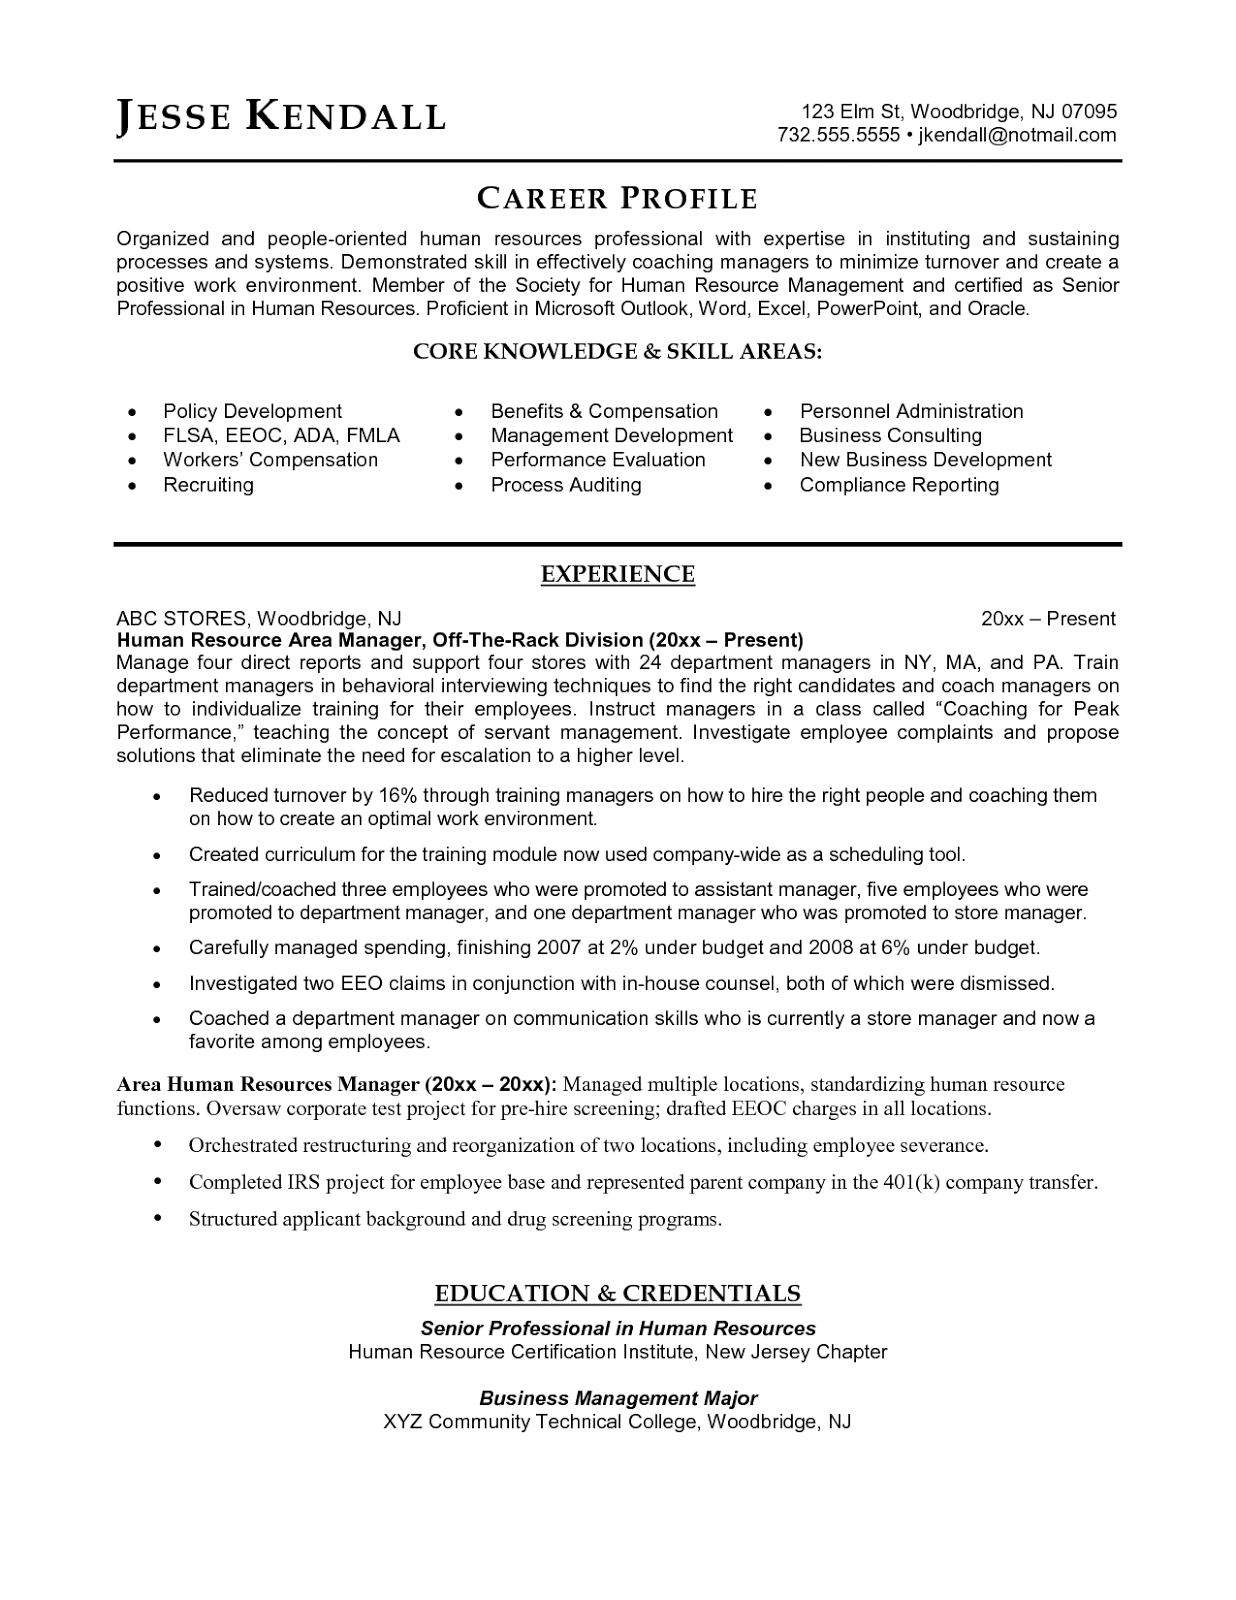 Resume for resident advisor